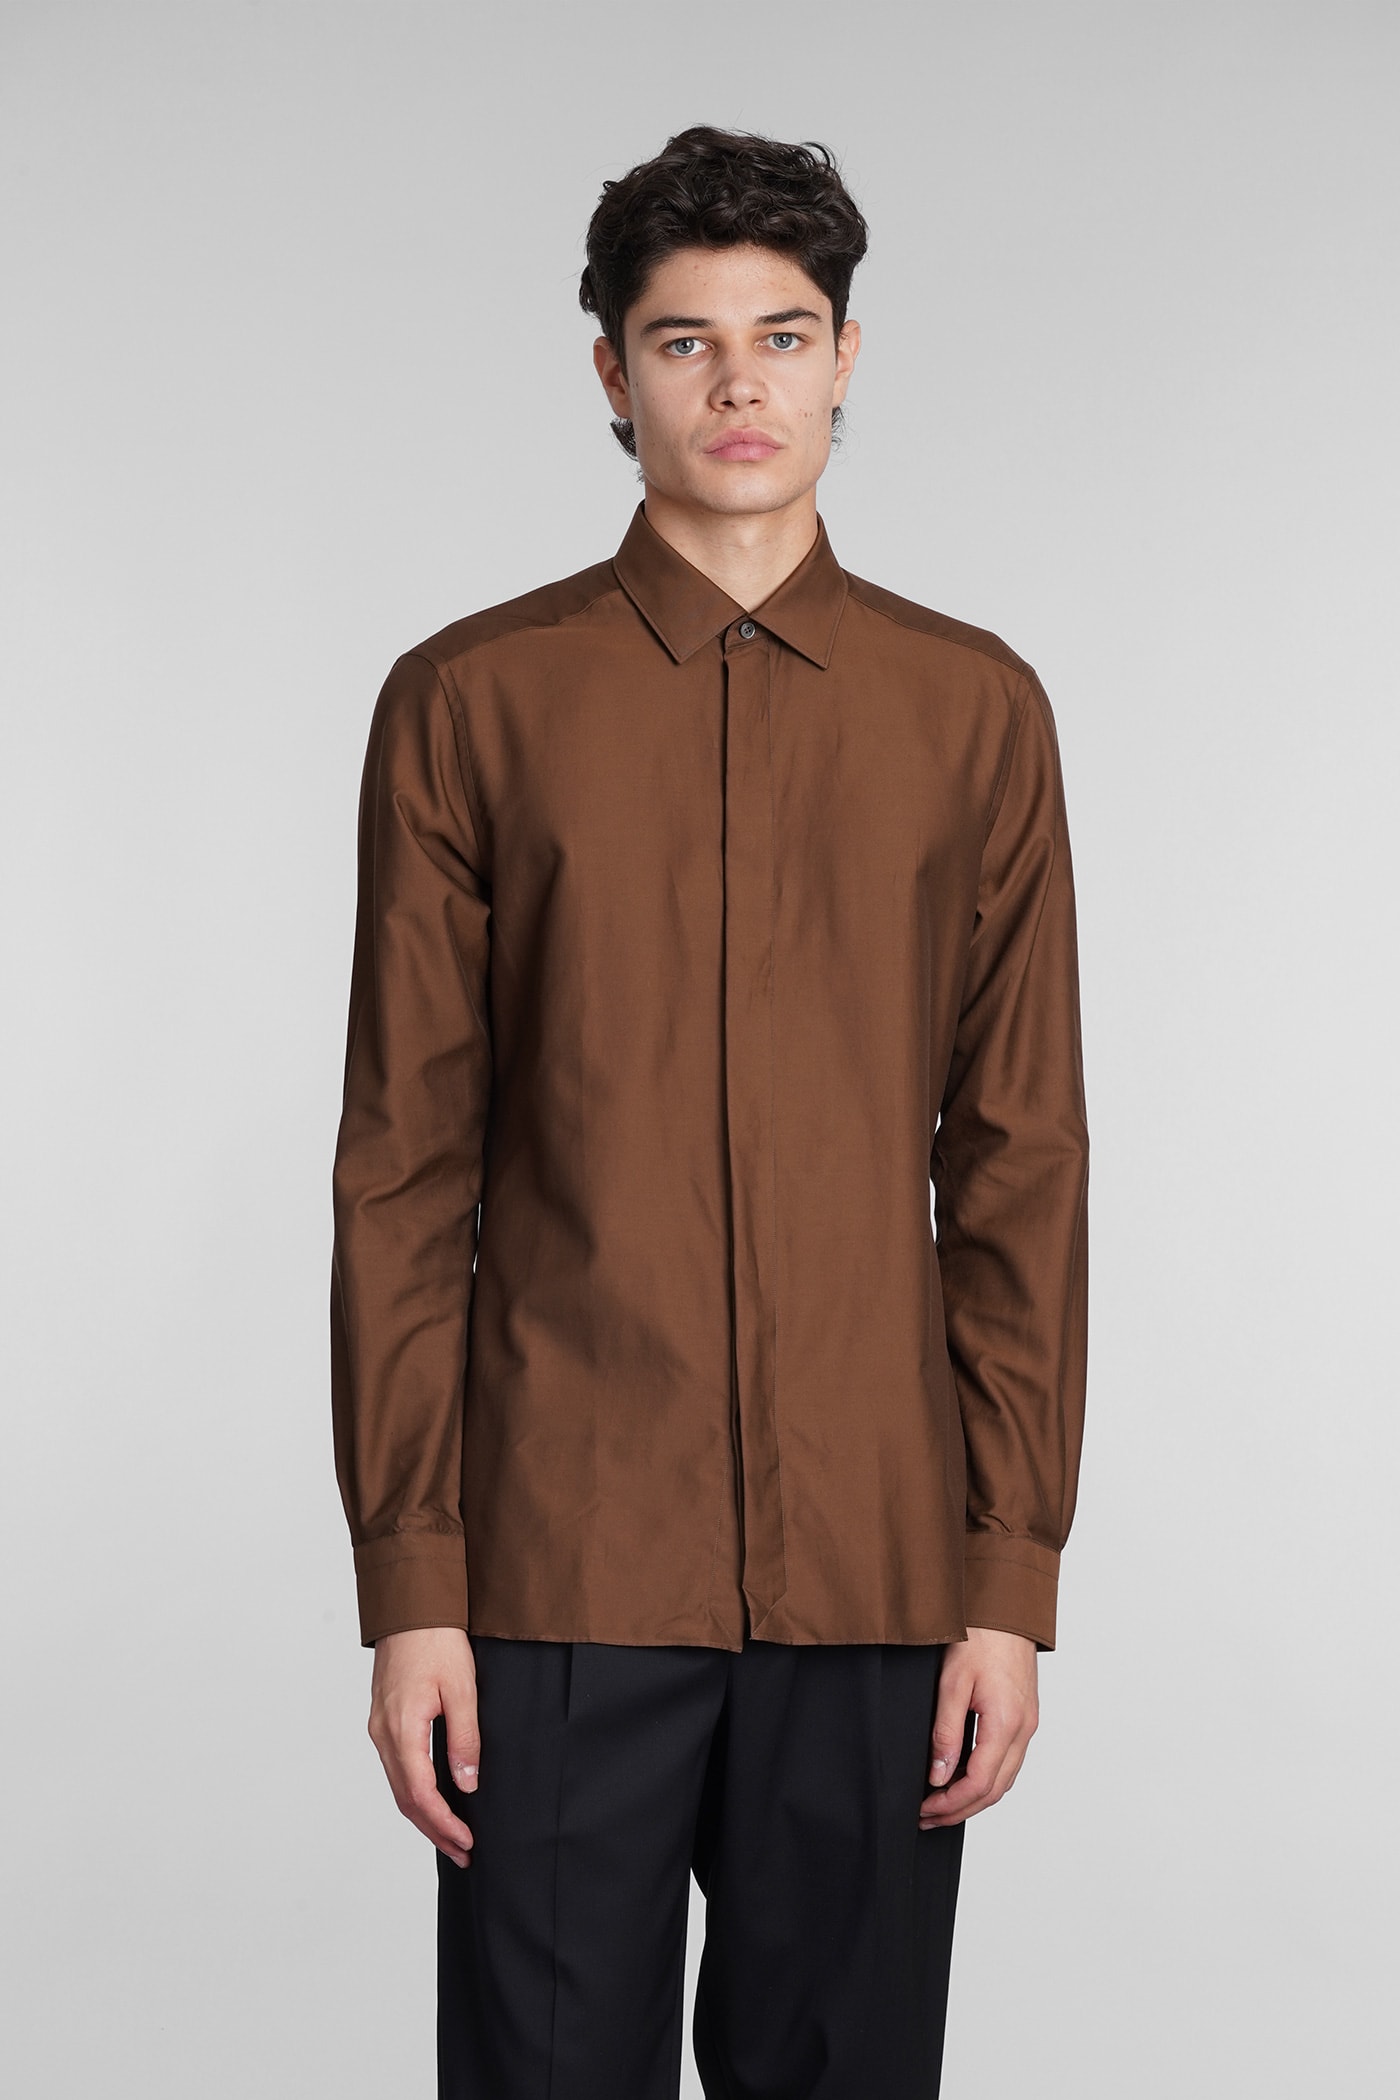 Ermenegildo Zegna Shirt In Brown Cotton